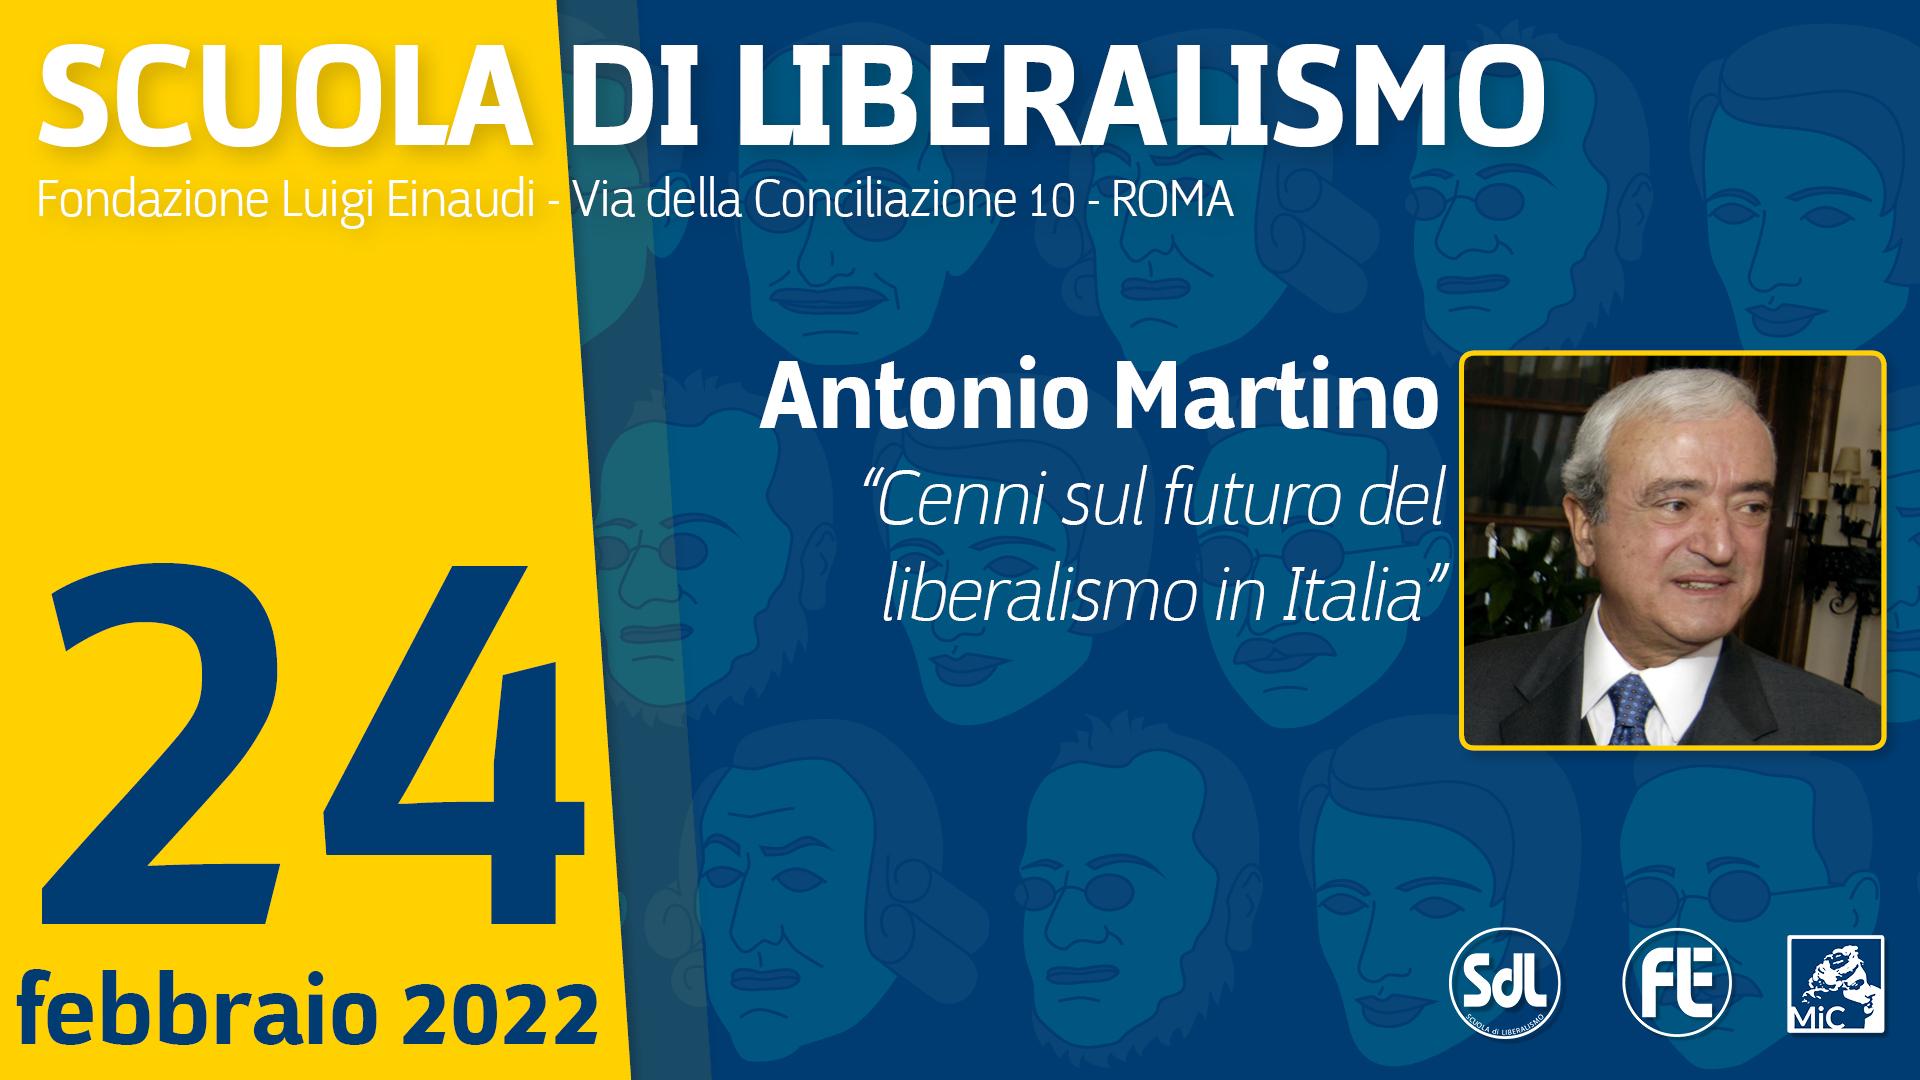 Scuola di Liberalismo 2022 – Antonio Martino “Cenni sul futuro del liberalismo in Italia”